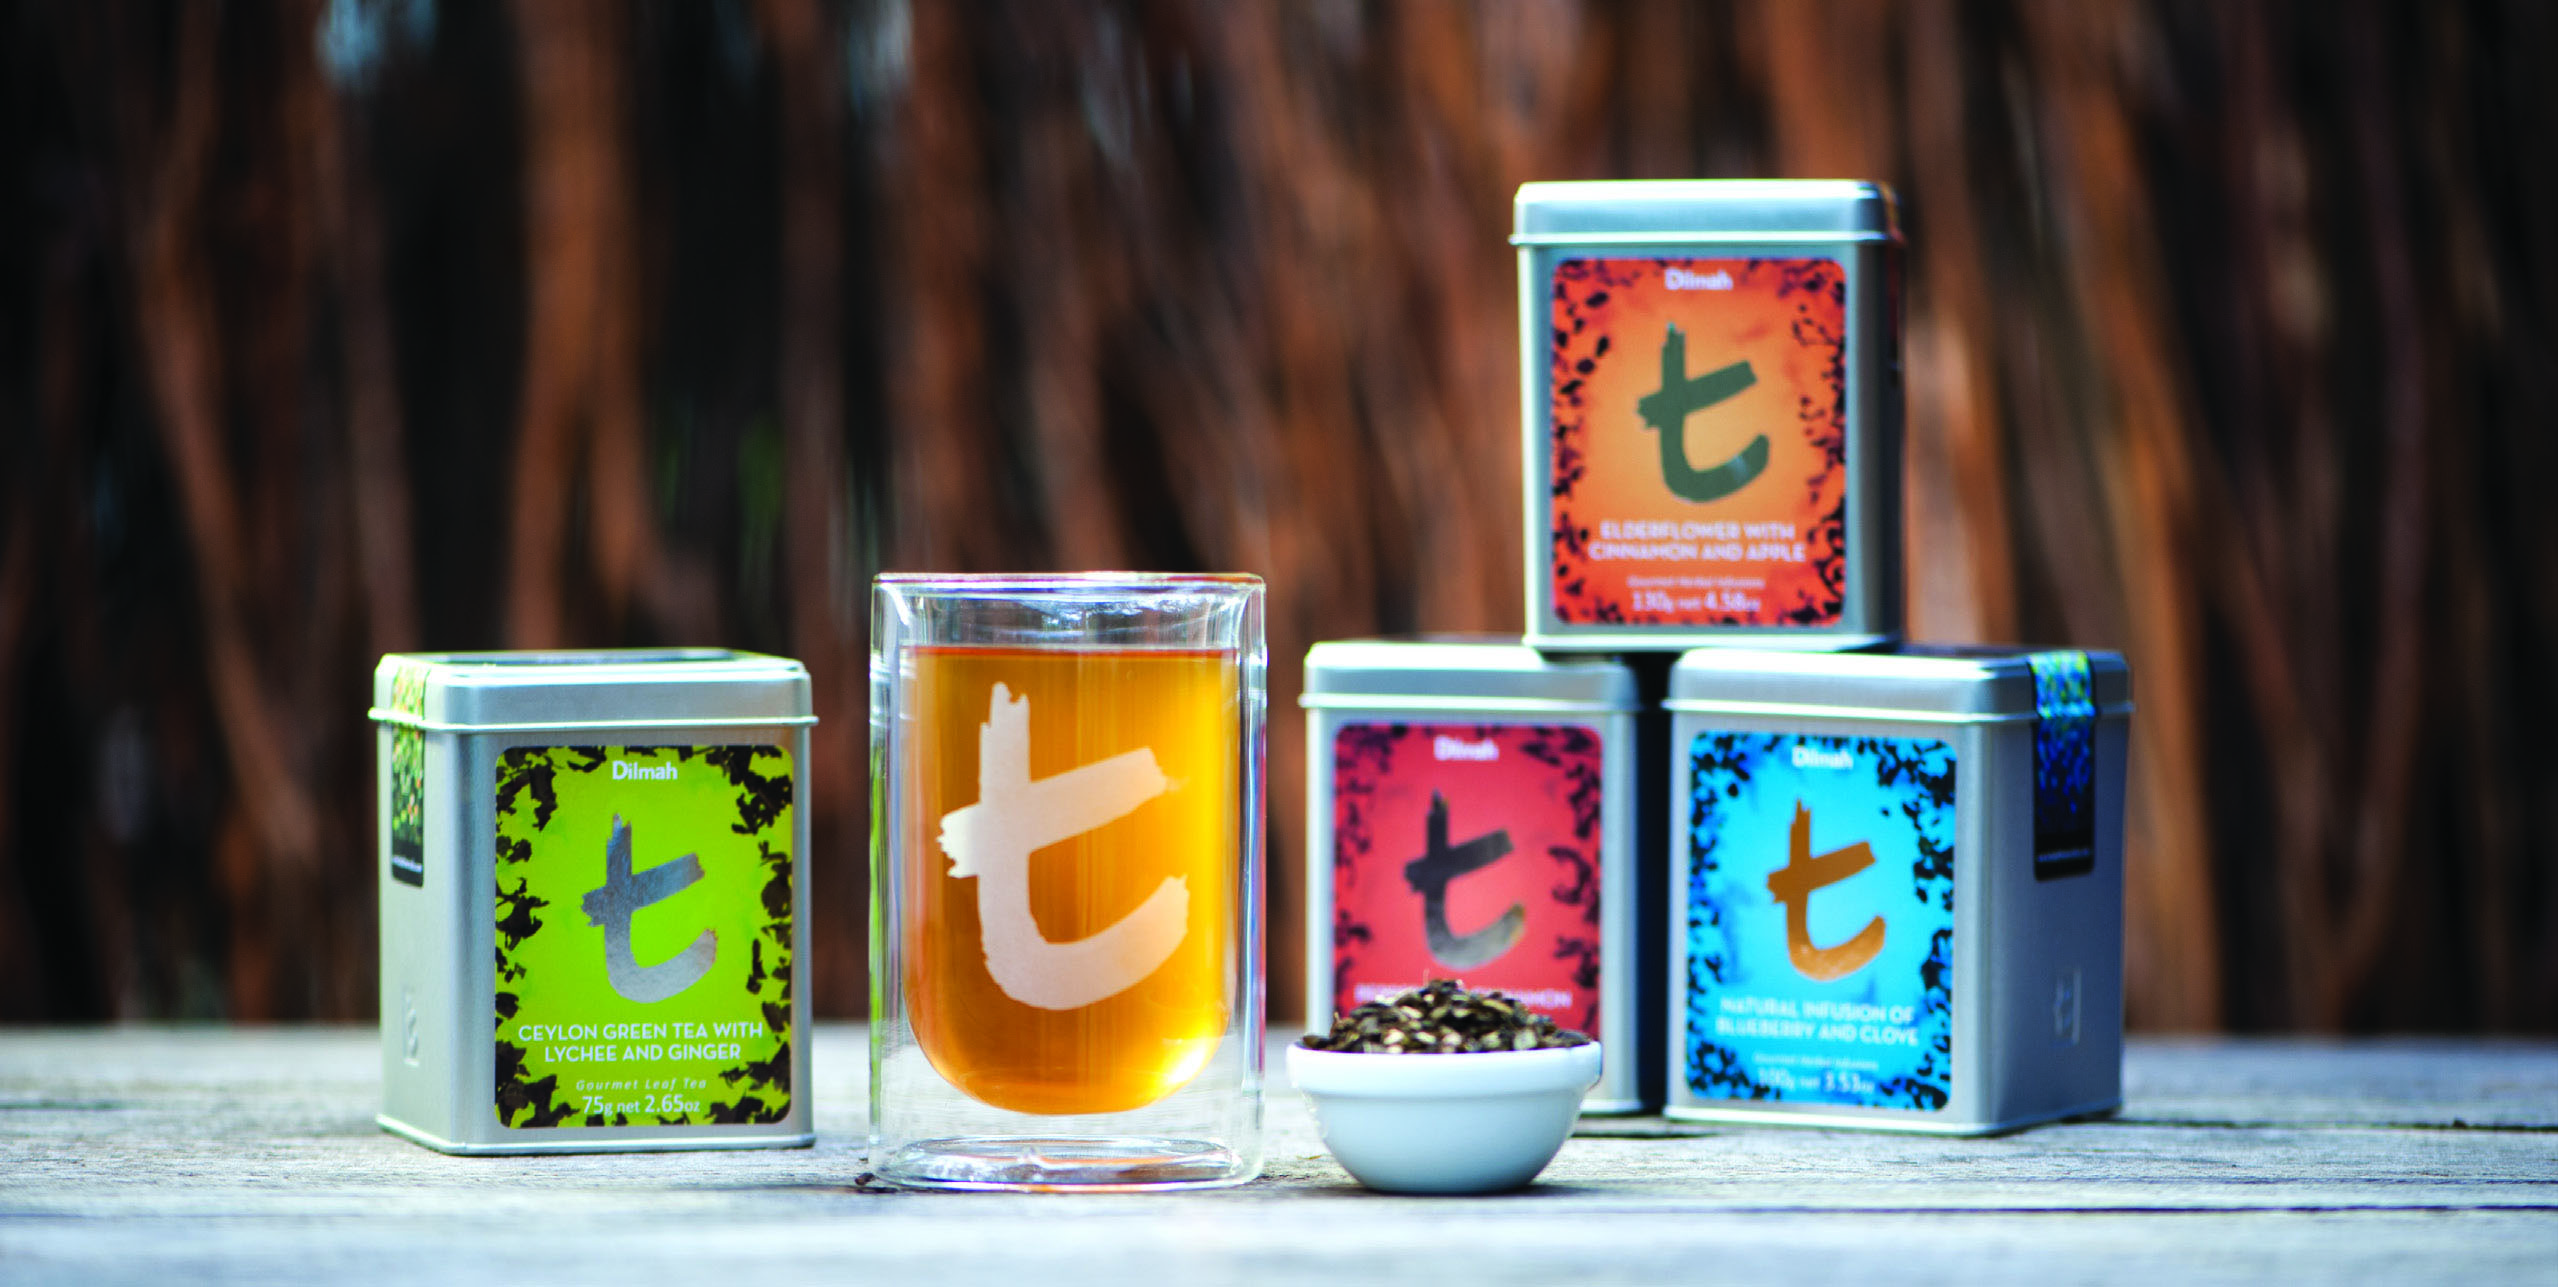 T-series designer gourmet teas by Dilmah